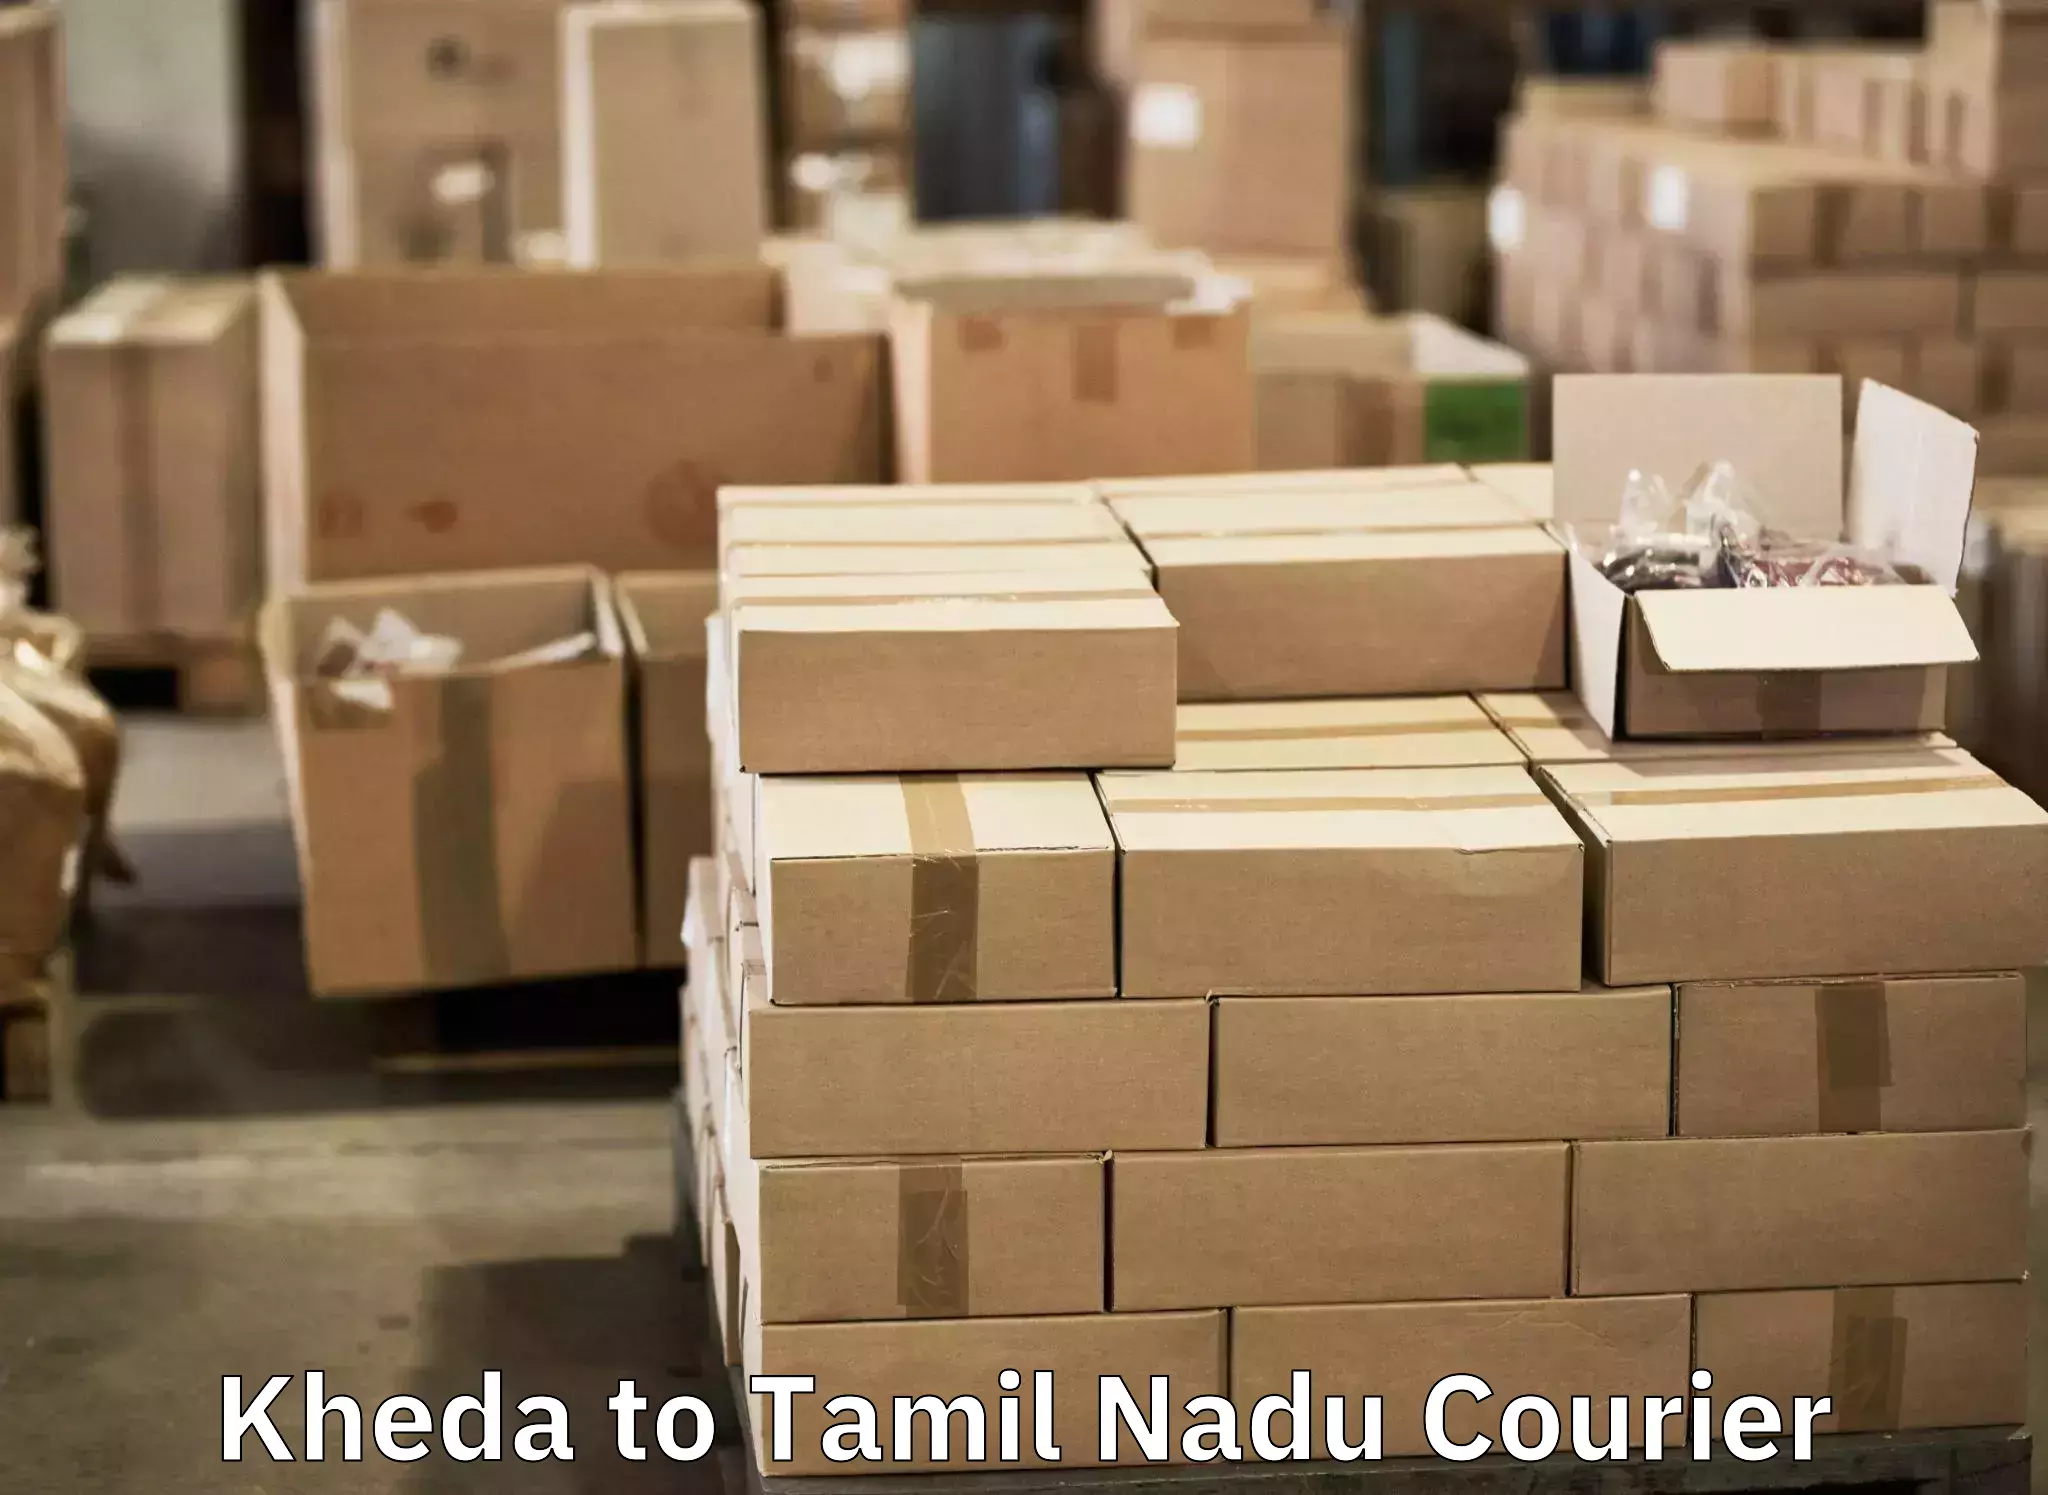 Door-to-door baggage service Kheda to IIIT Tiruchirappalli